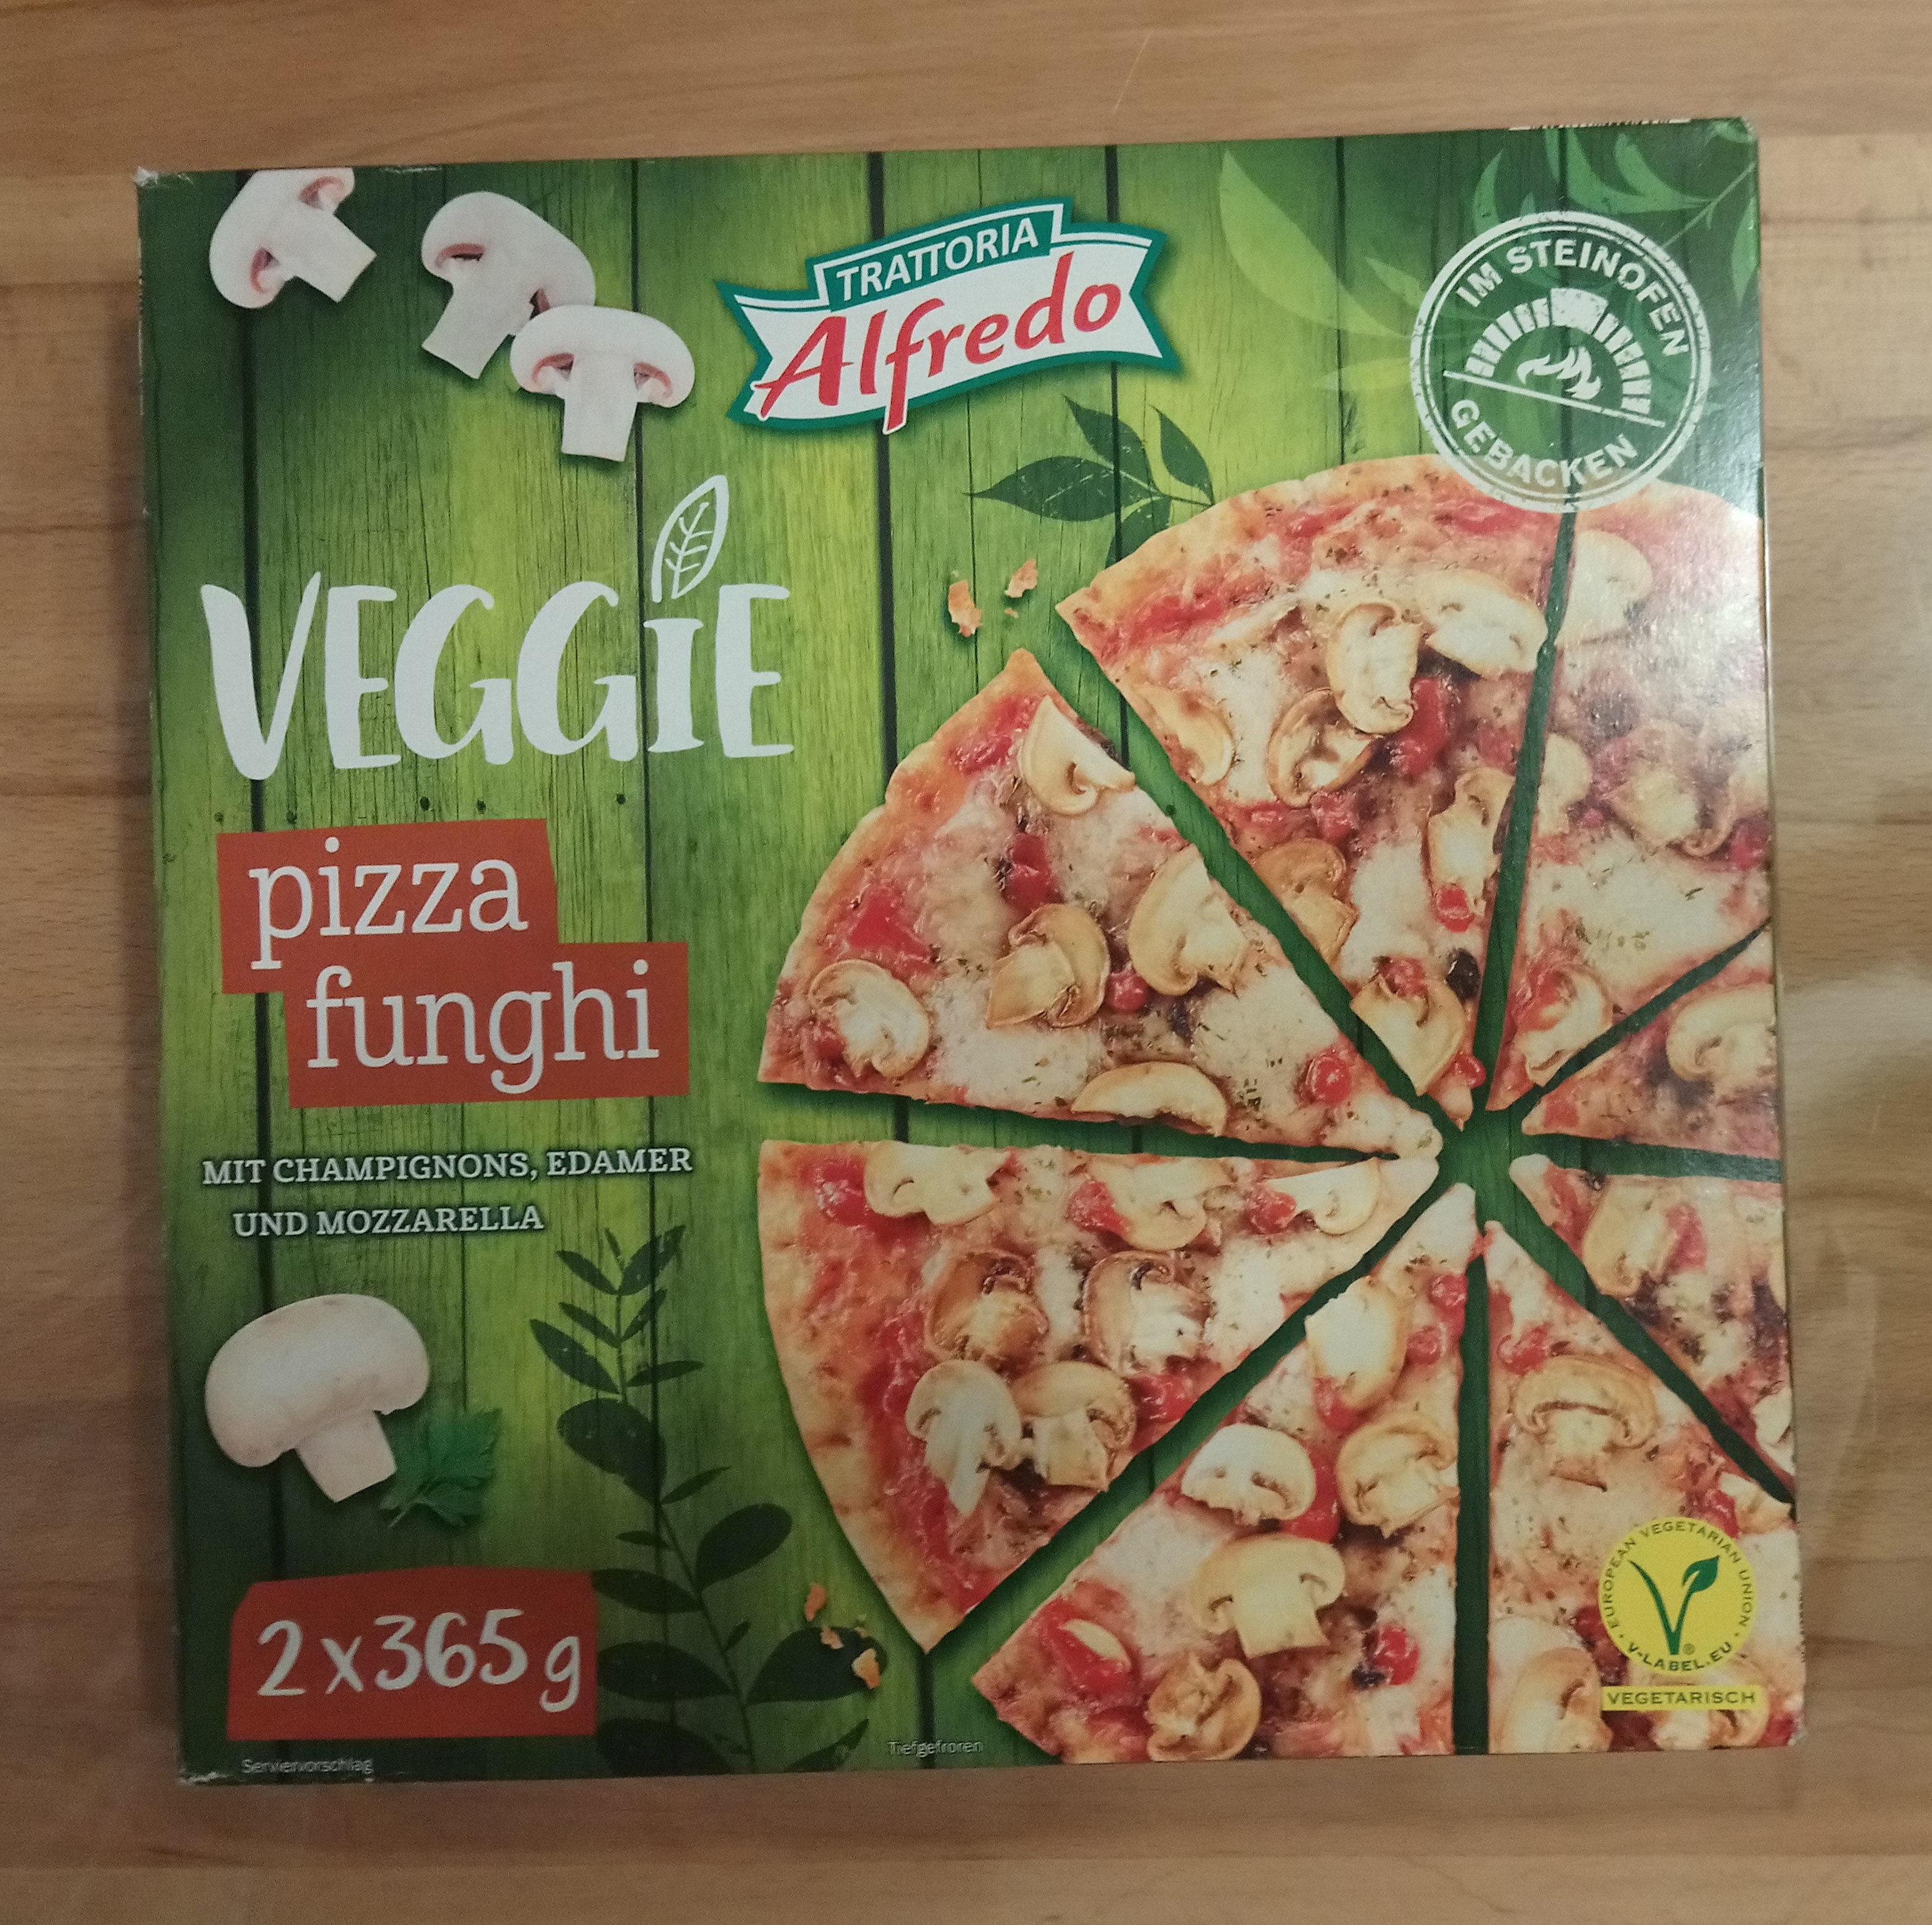 Pizza funghi - Product - de